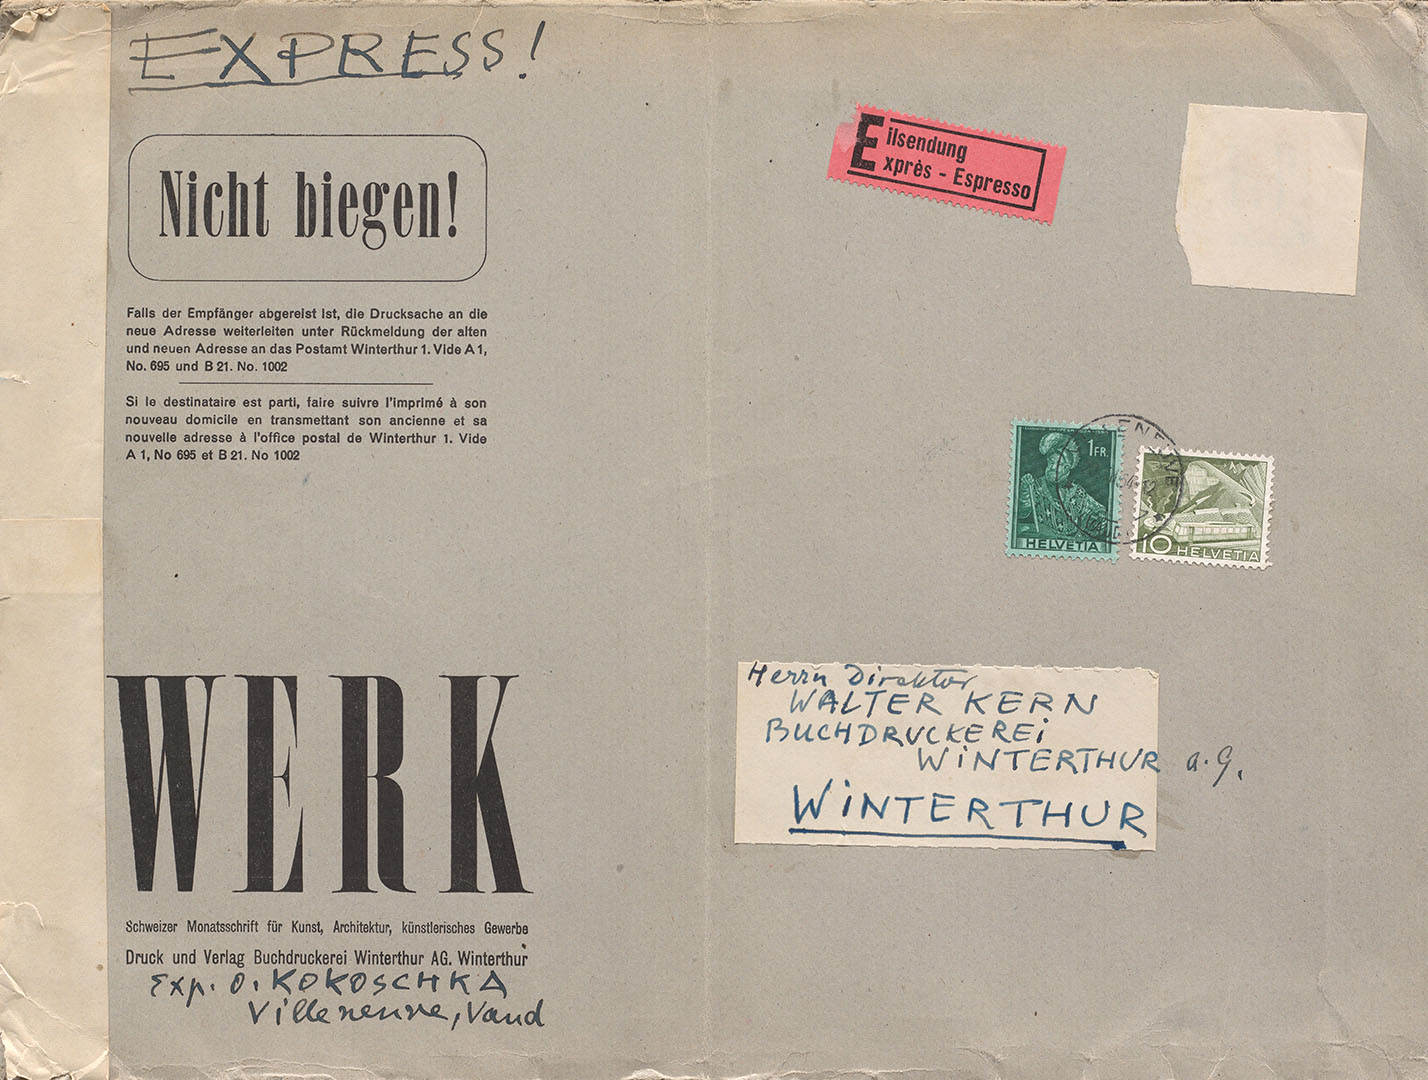 Im Austausch mit Zürcher Kunstfreunden: von Kokoschka umadressierter Briefumschlag an den Verleger Walter Kern (1898-1966) in Winterthur, 1954 (ZBZ, Nachl. O. Kokoschka 275.1)